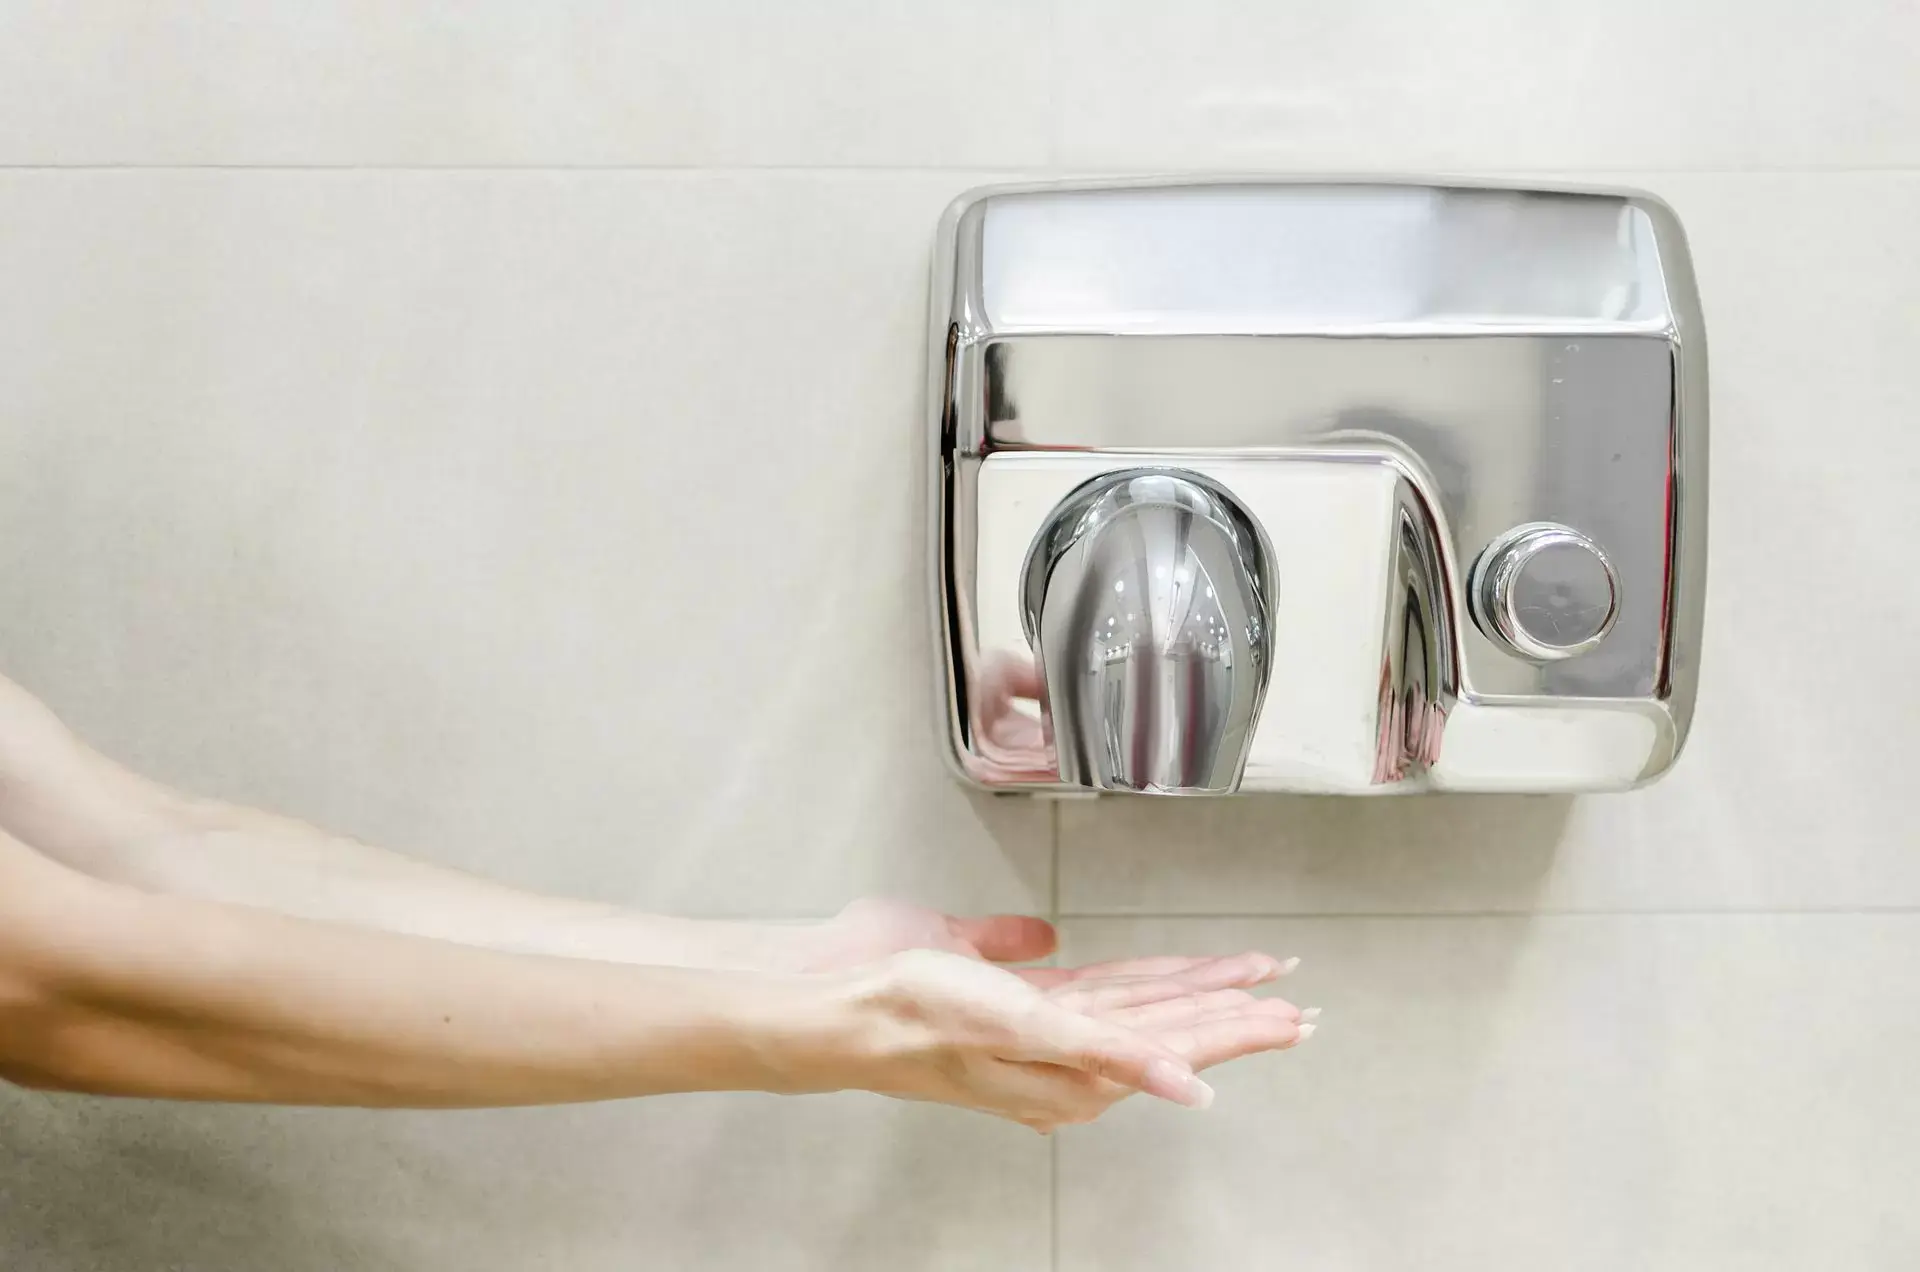 Zapomnij o ręczniku i wykorzystaj żywioł powietrza w swojej łazience! Jaką suszarkę do rąk wybrać?